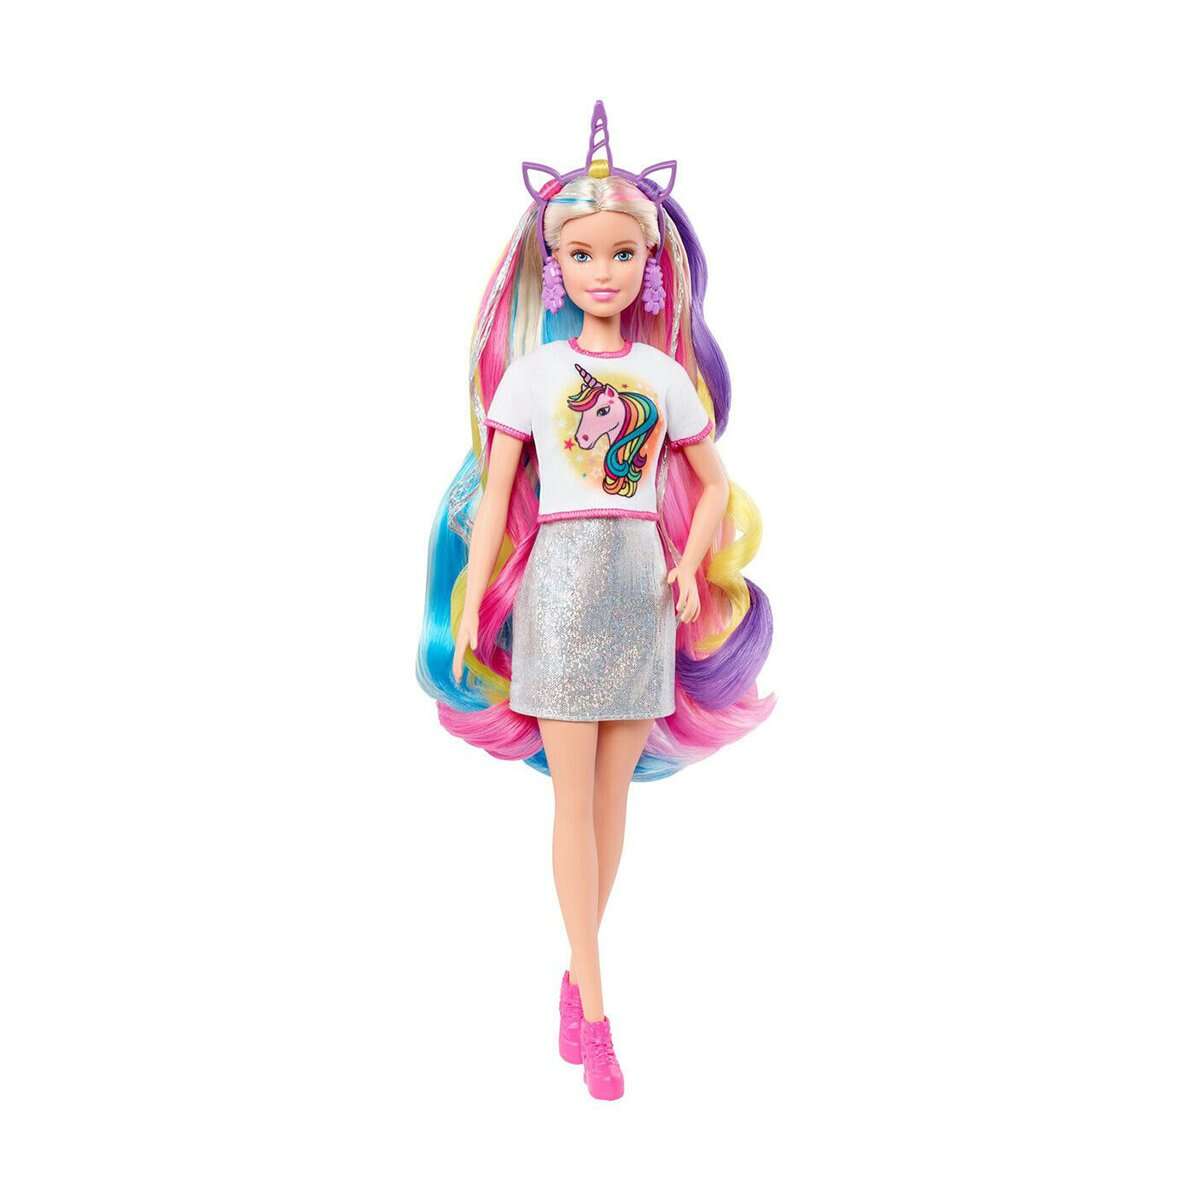 Papusa Barbie, Fantasy Hair cu accesorii 